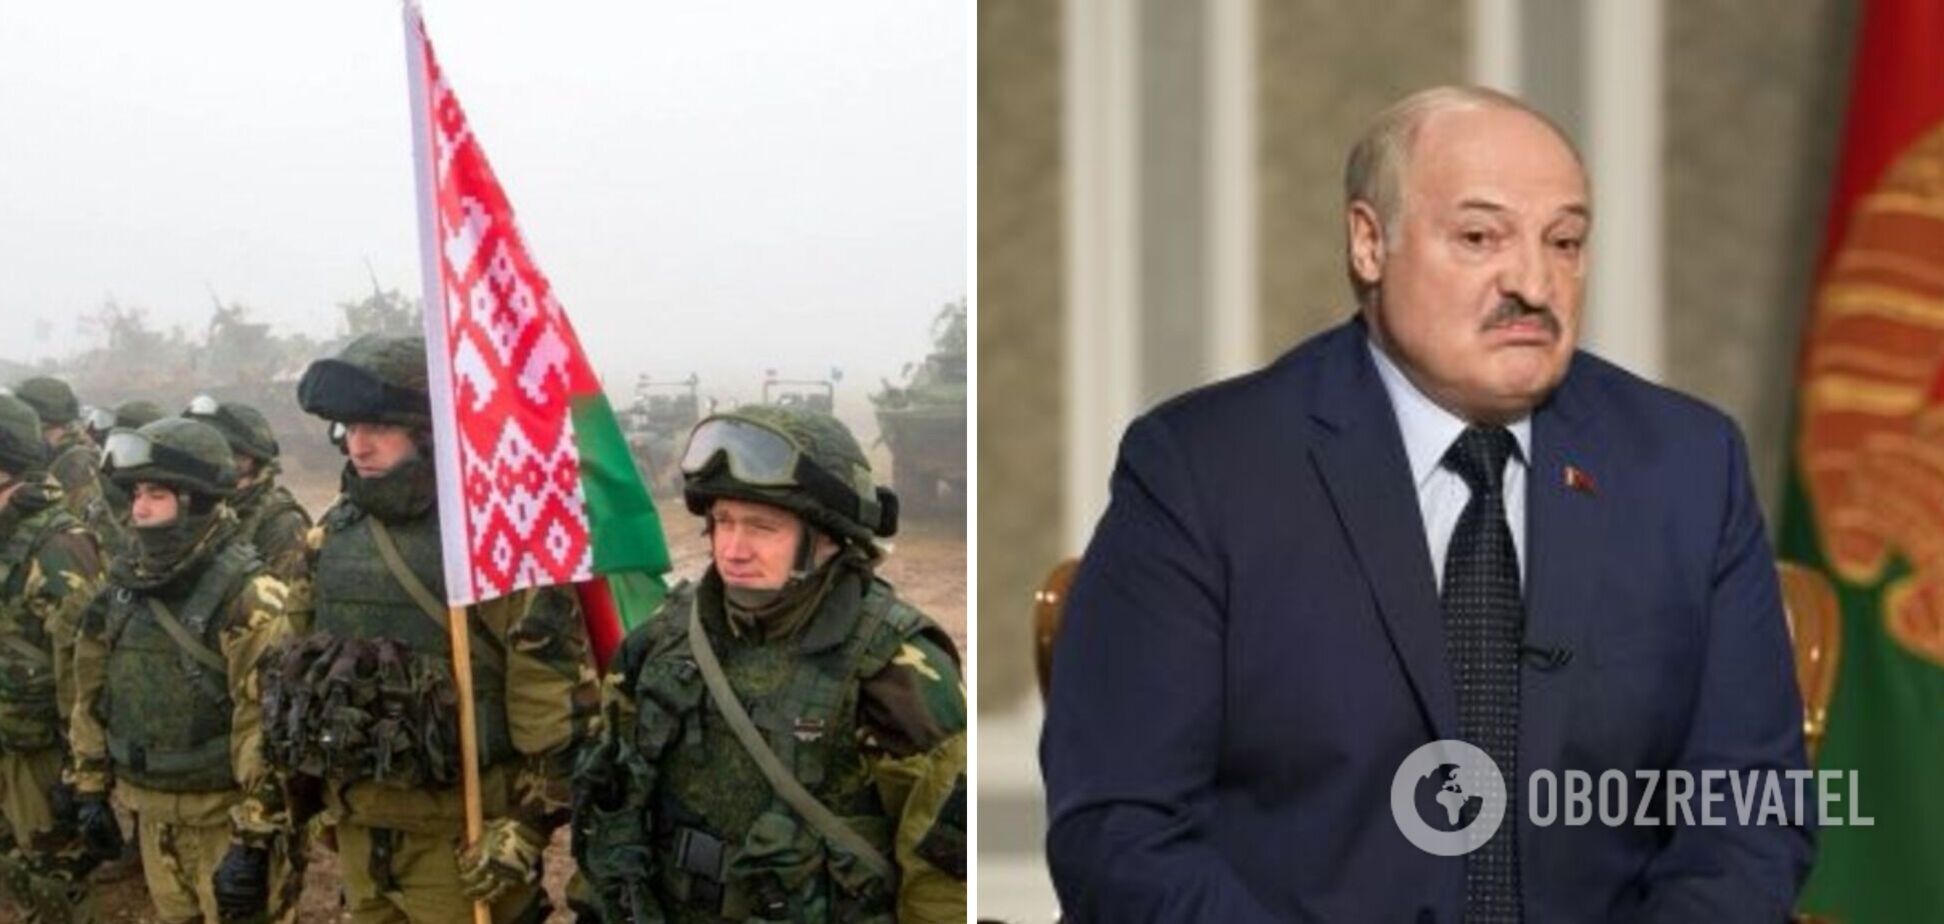 Лукашенко готується розпочати війну проти України, заявив білоруський опозиціонер